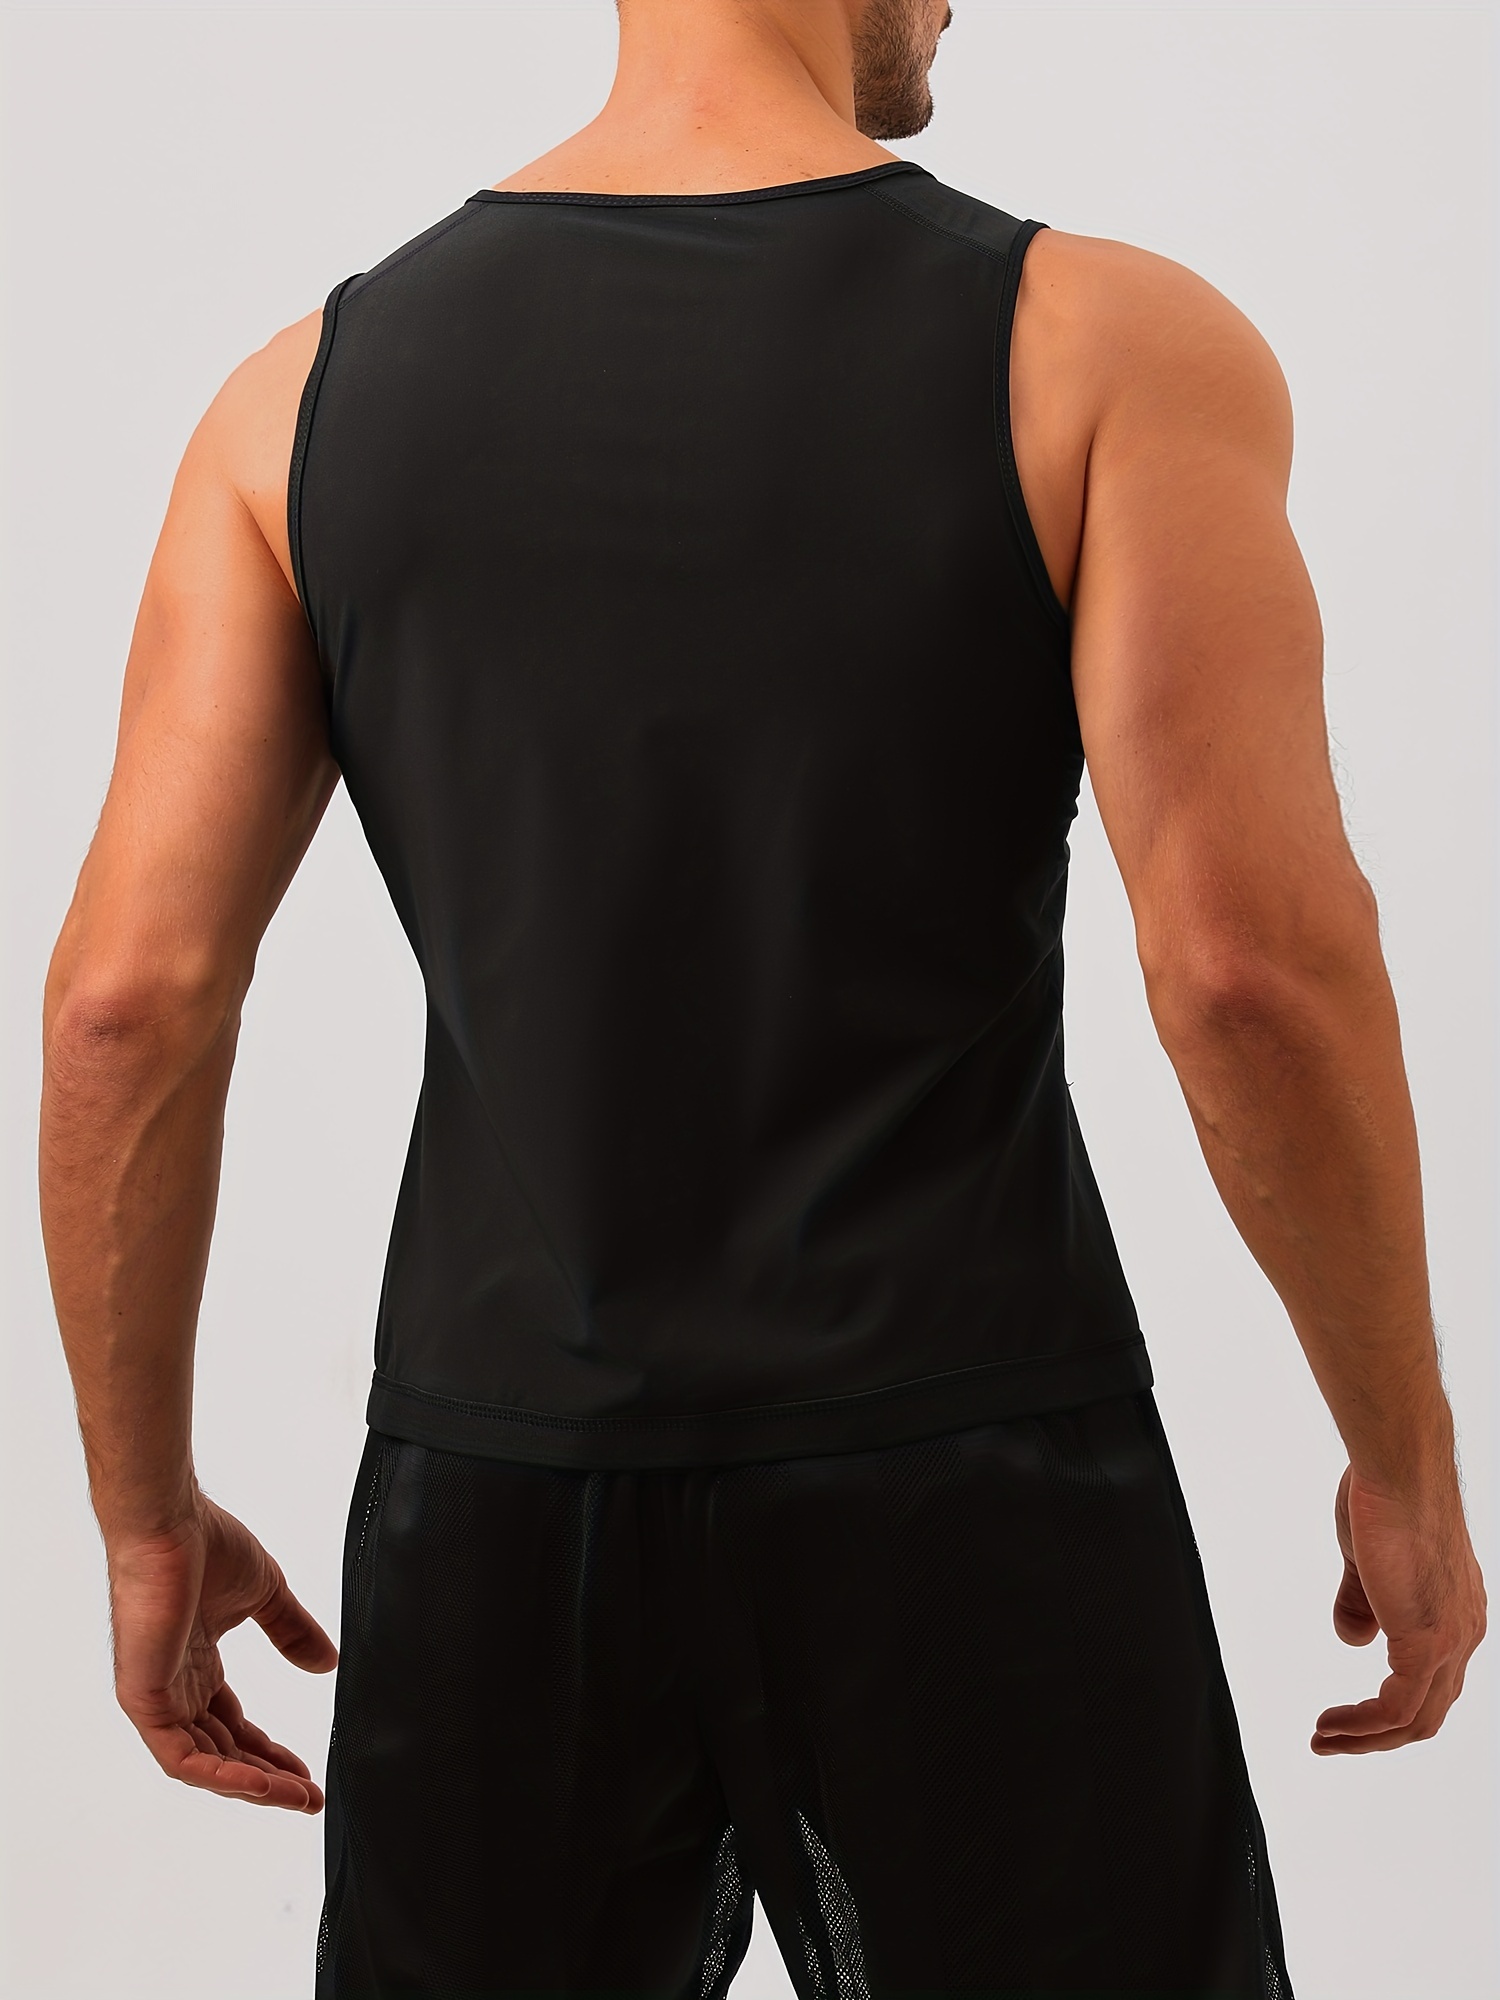 Mens Neoprene Sport Slimming Sweat Sauna Vest With Zipper For Body